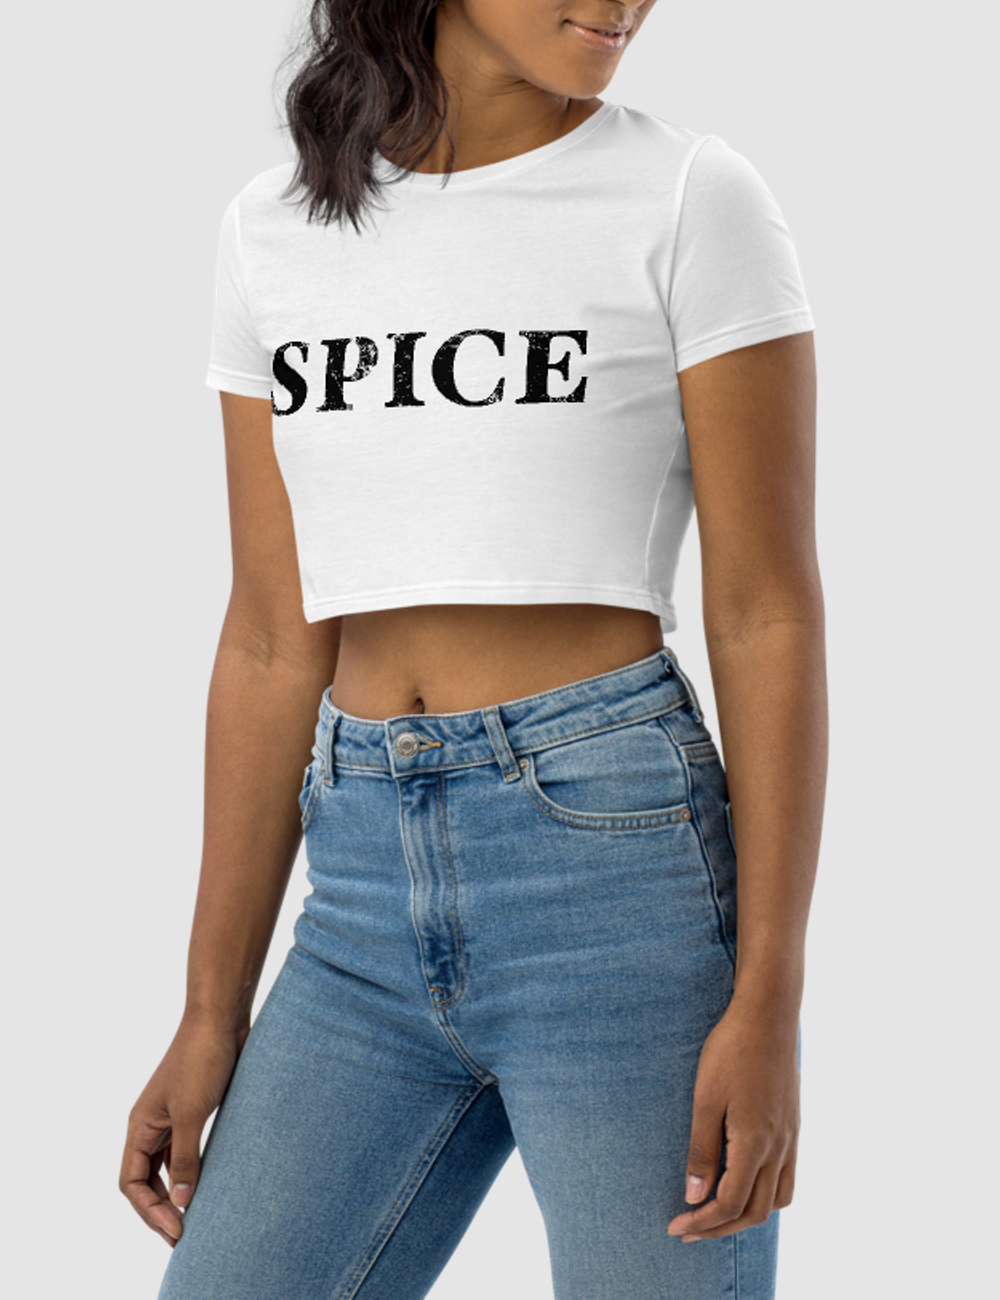 Spice | Women's Crop Top T-Shirt OniTakai